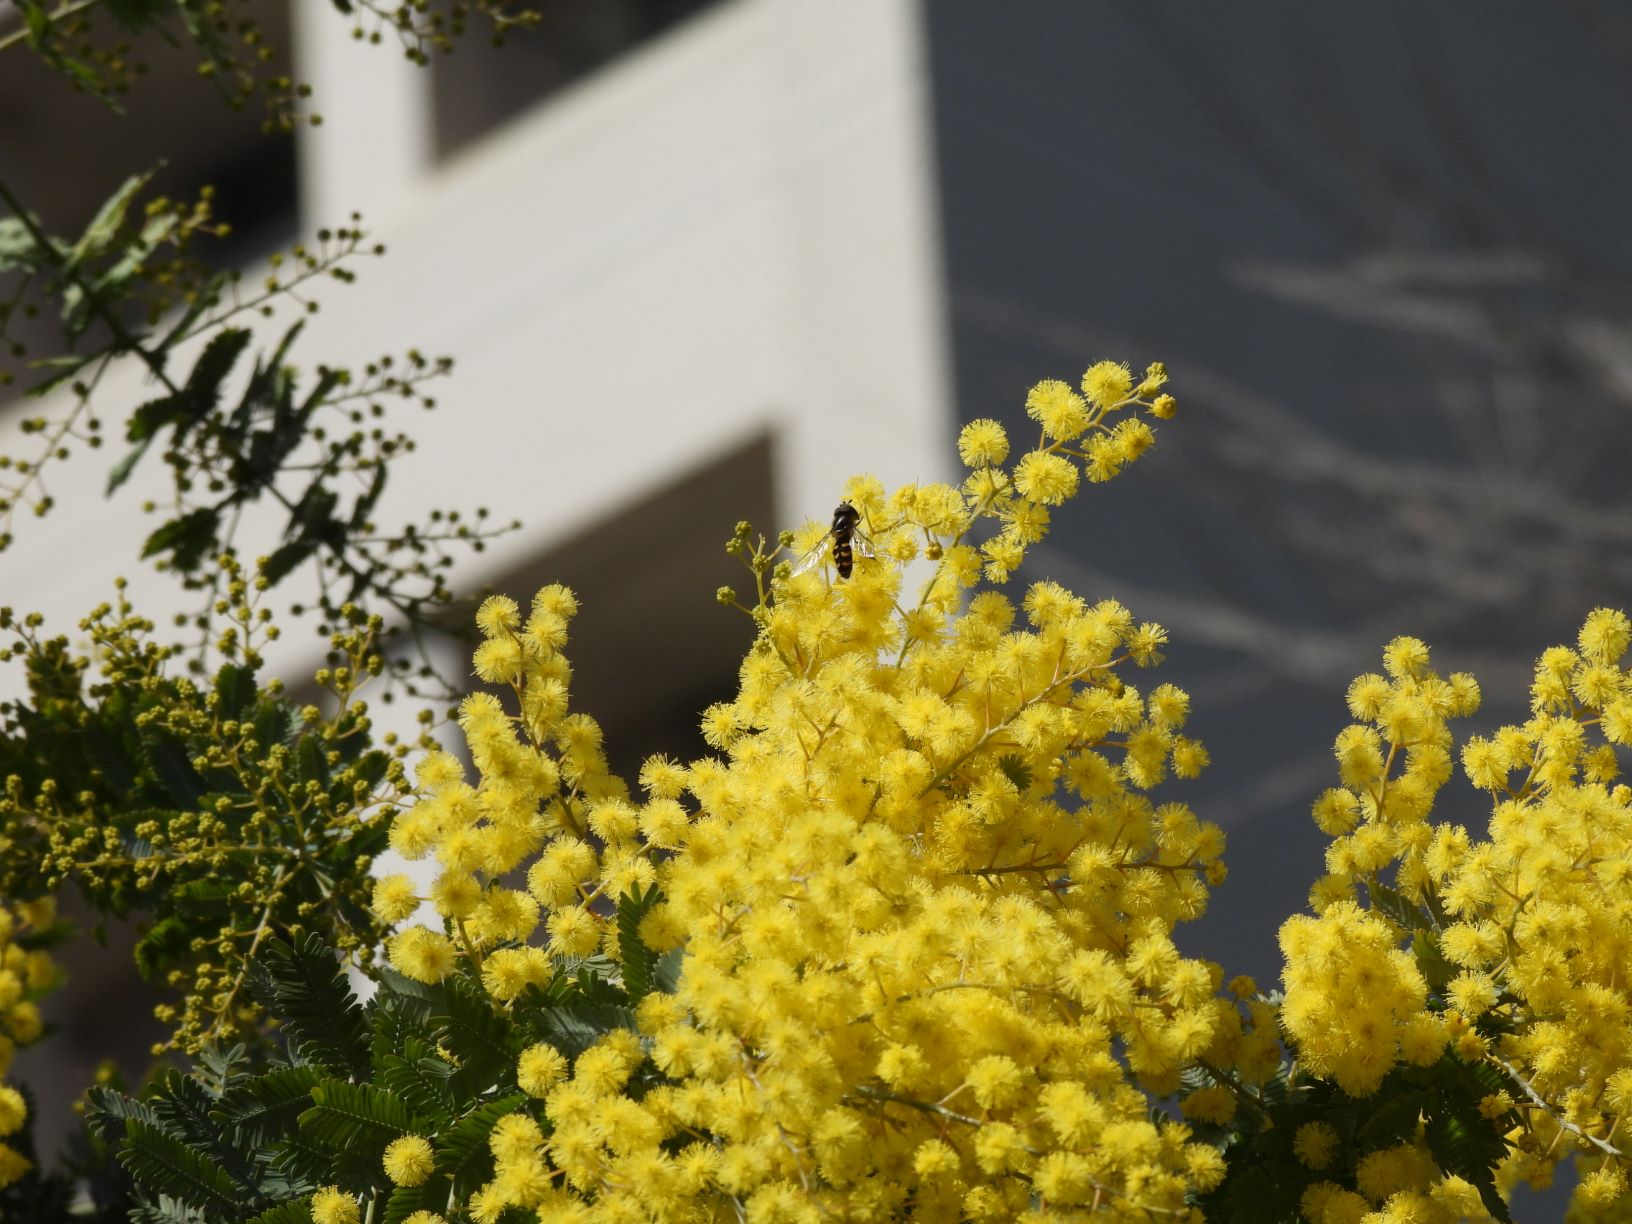 城西大学広報課 ハクモクレンが咲き始めました 青い空を背に白い 花がいっぱいです 隣にはギンヨウアカシアの黄色い花がいっぱい 蜜を求めて虫が来ていました 春です 春 春 春 春 春が咲く 花が咲く 虫が来る 城西大学 坂戸キャンパス